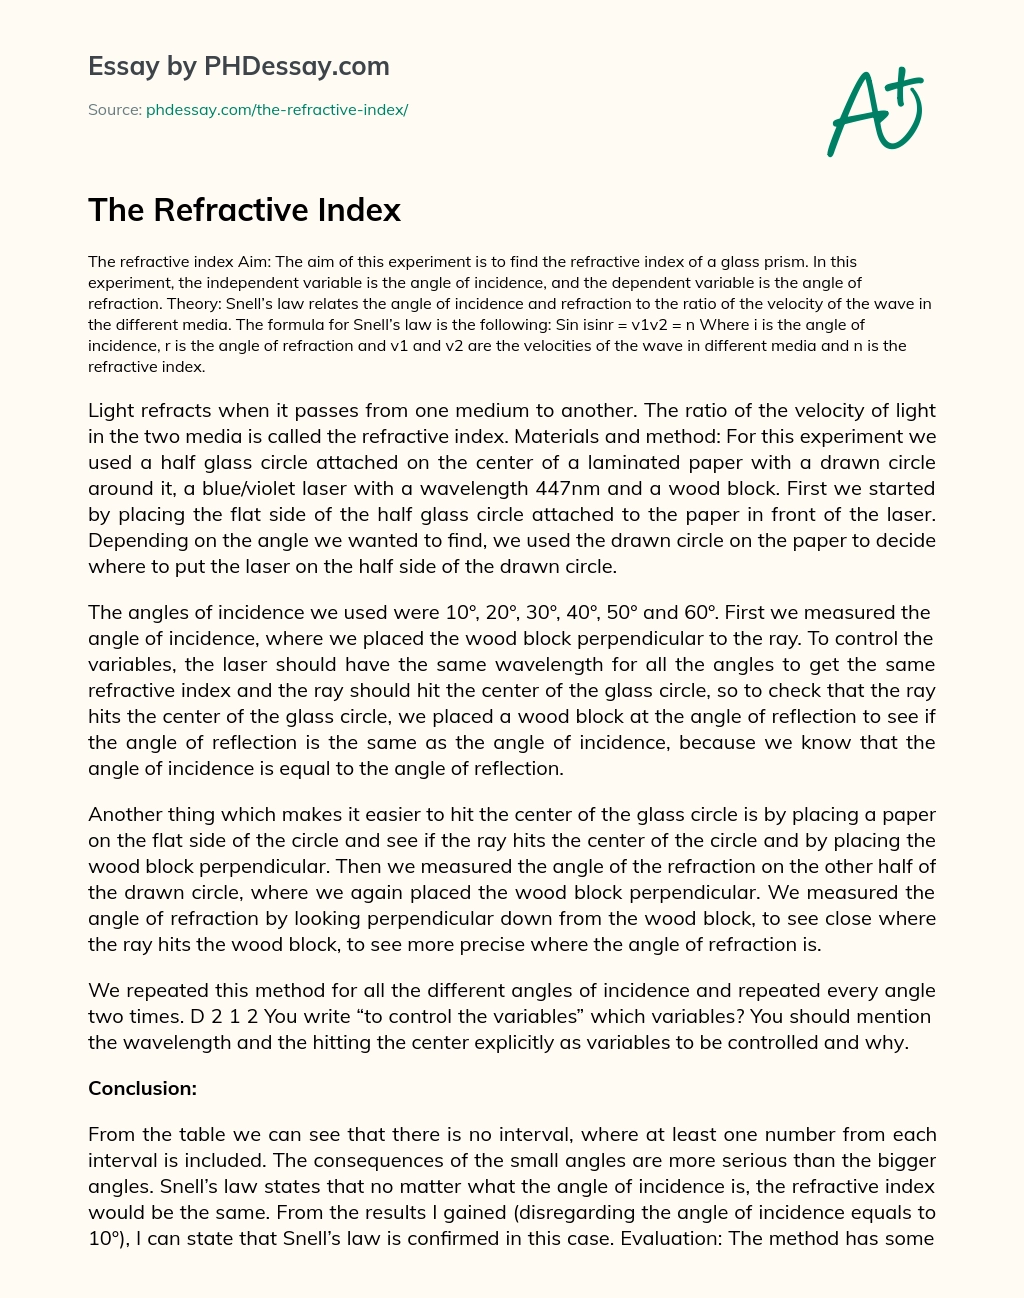 The Refractive Index essay